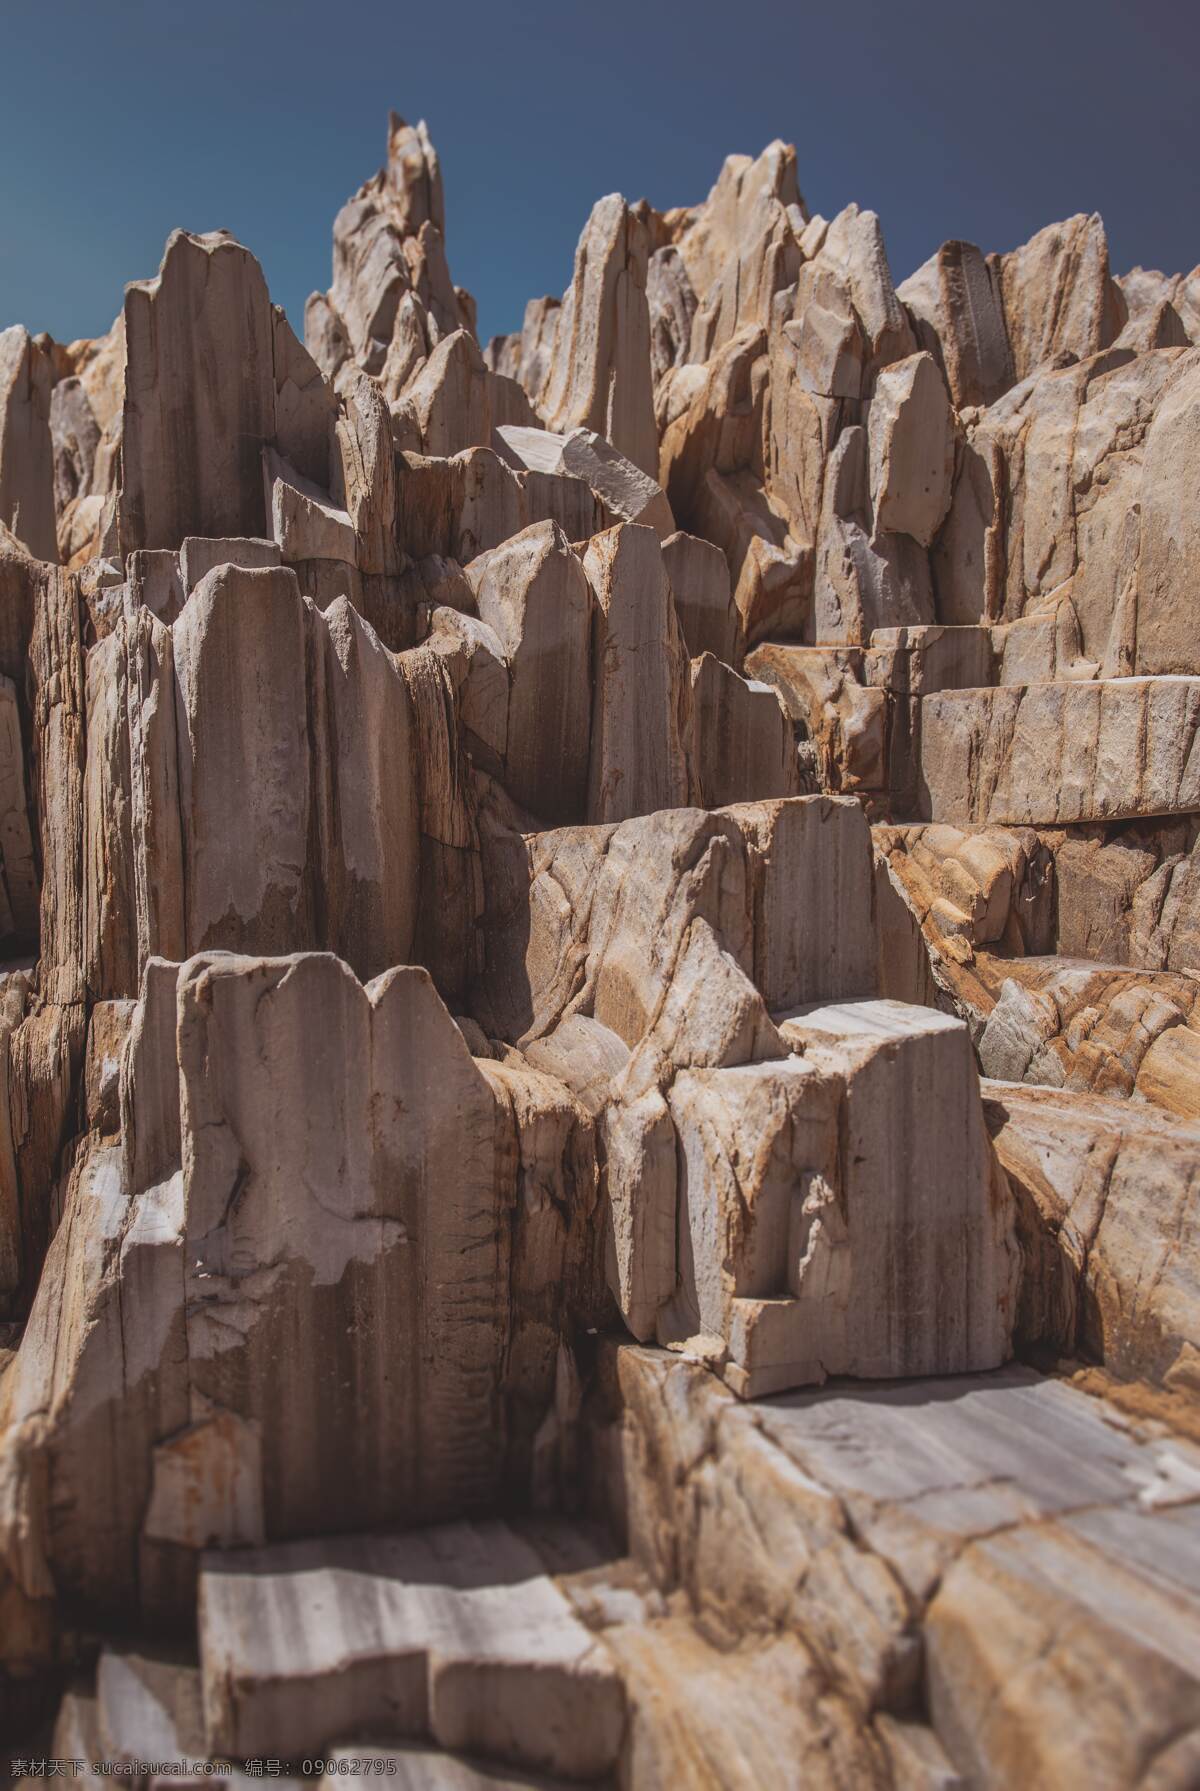 岩石 山 岩层 峭壁 石壁 石头 石头纹理 纹理 背景 摄影素材 风景 自然景观 自然风景